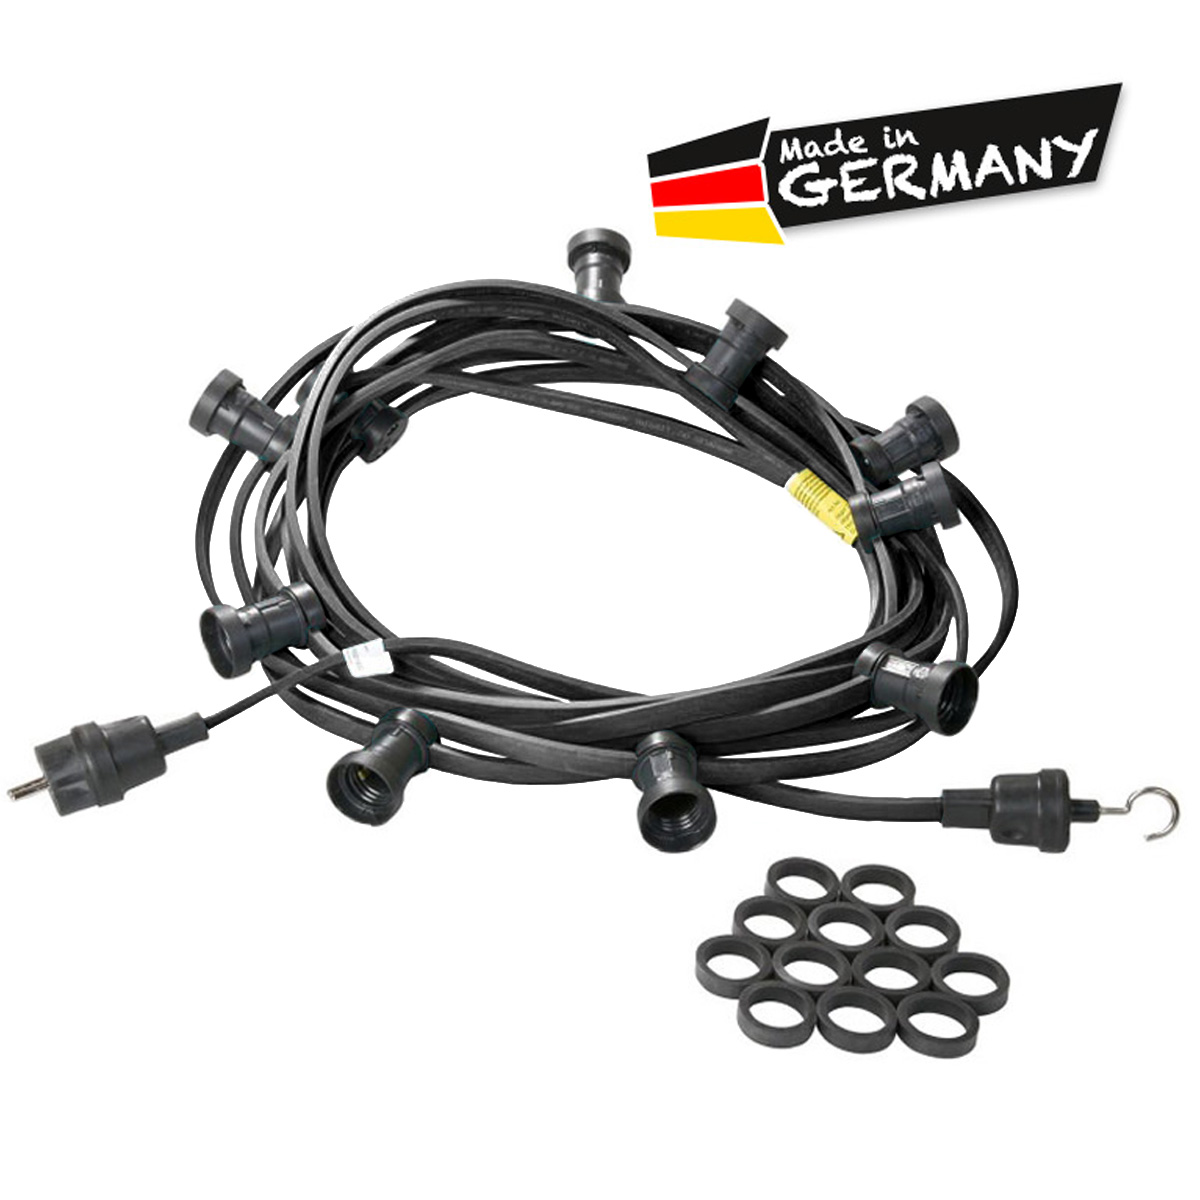 Illu-/Partylichterkette schwarz 20m | Außenlichterkette | Made in Germany | 30 x E27 Schraubfassung